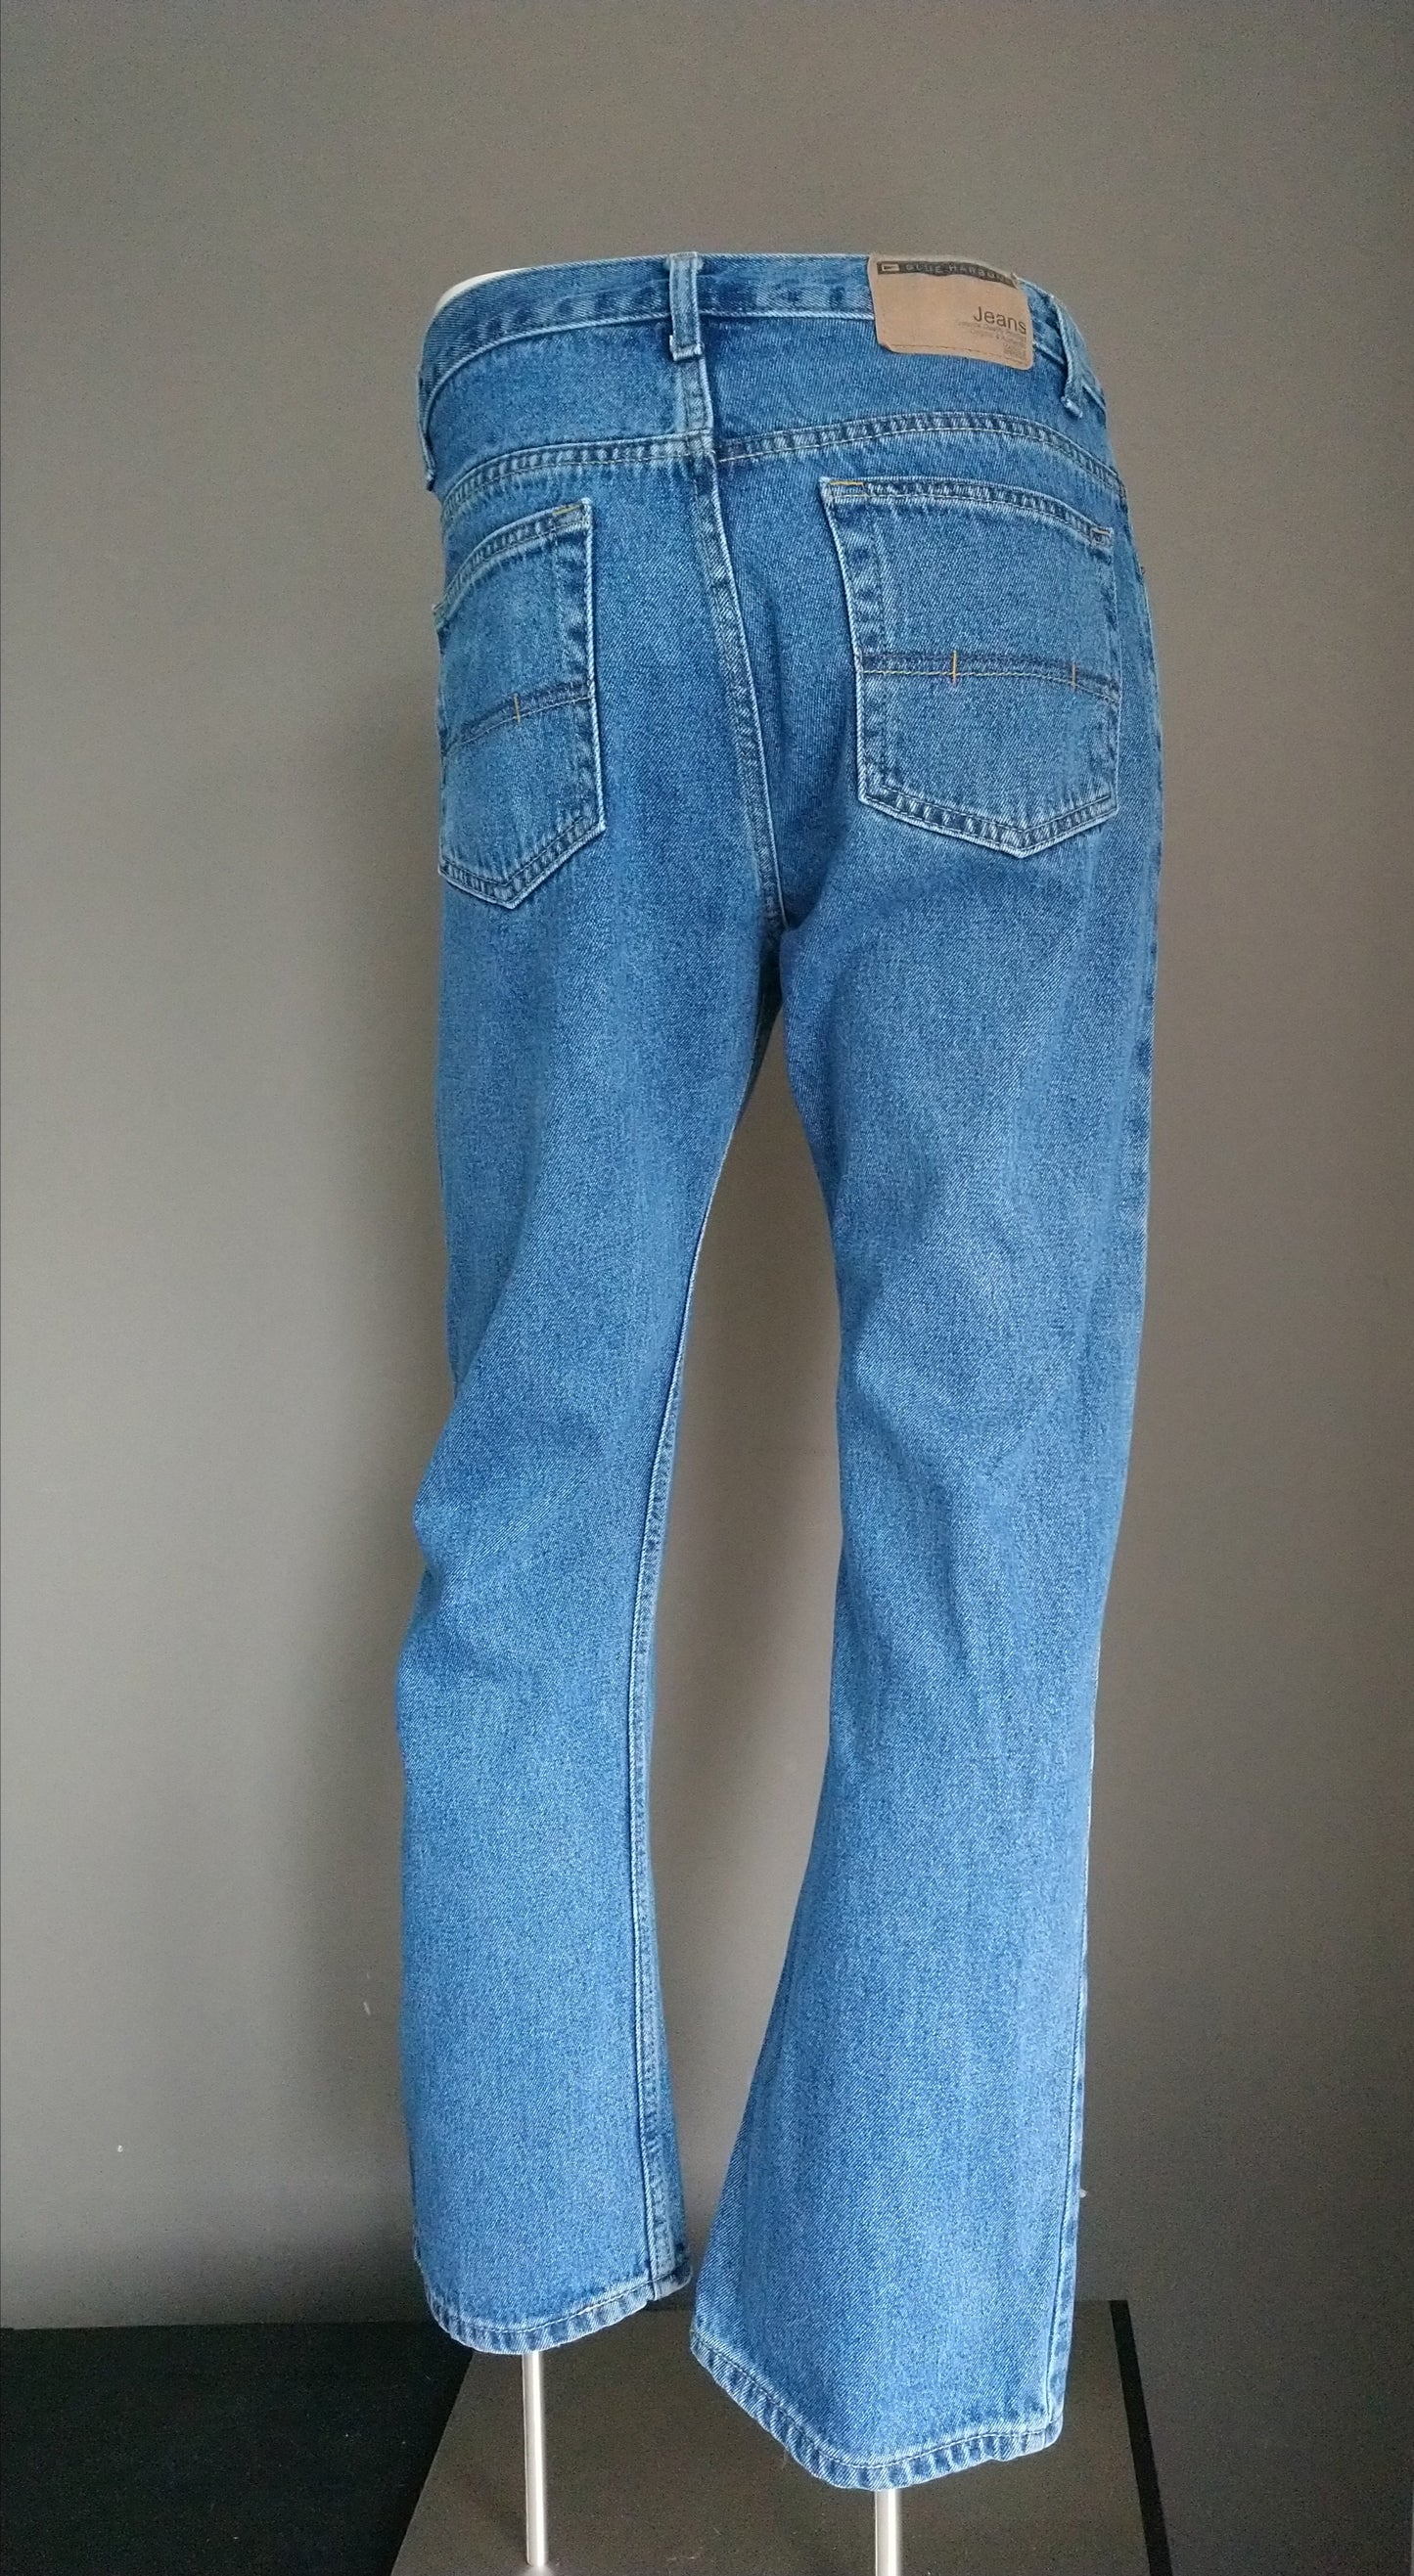 Blue Harbor Jeans. Blue colored. Size W32 - L30.